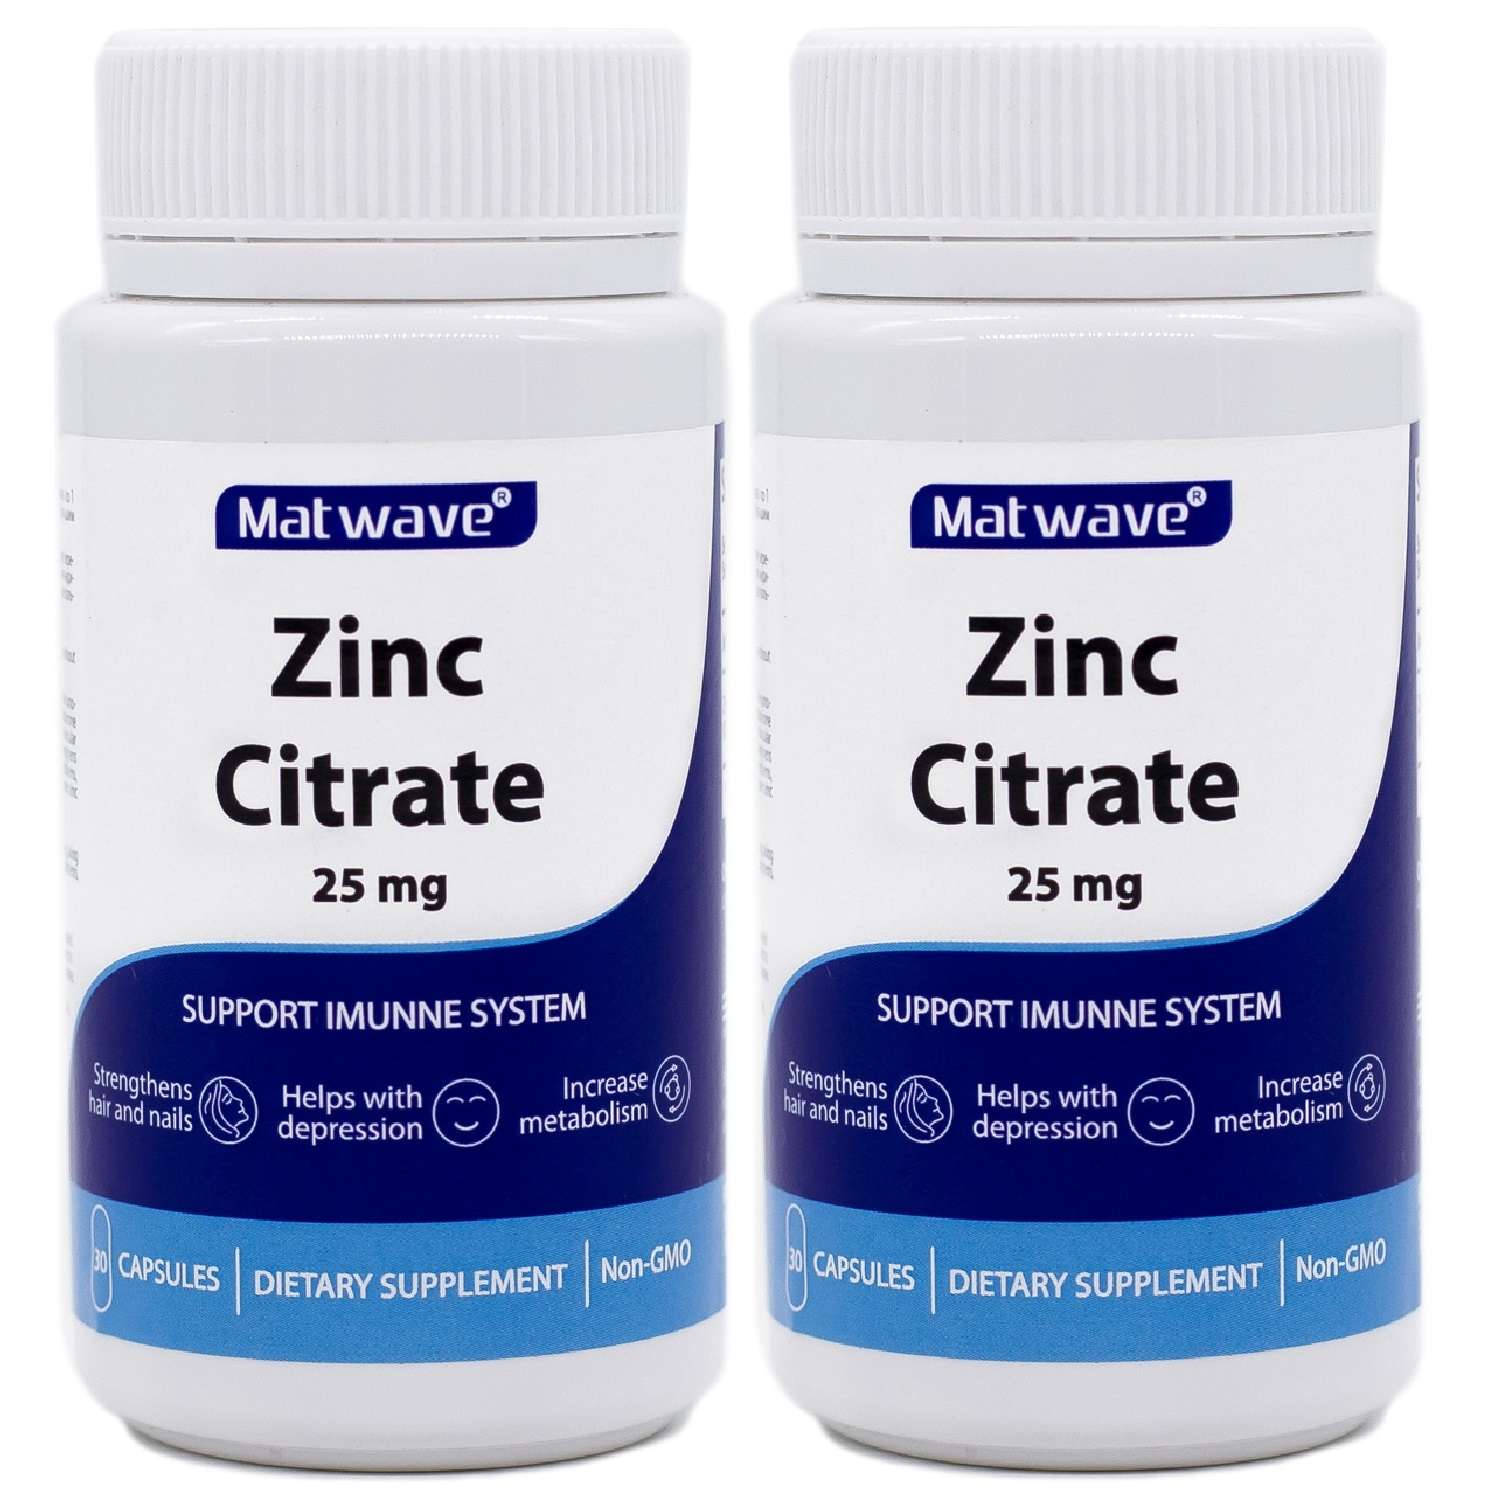 БАД Matwave Цинка Цитрат Zinc Citrate 25 мг 30 капсул комплект 2 банки - фото 1